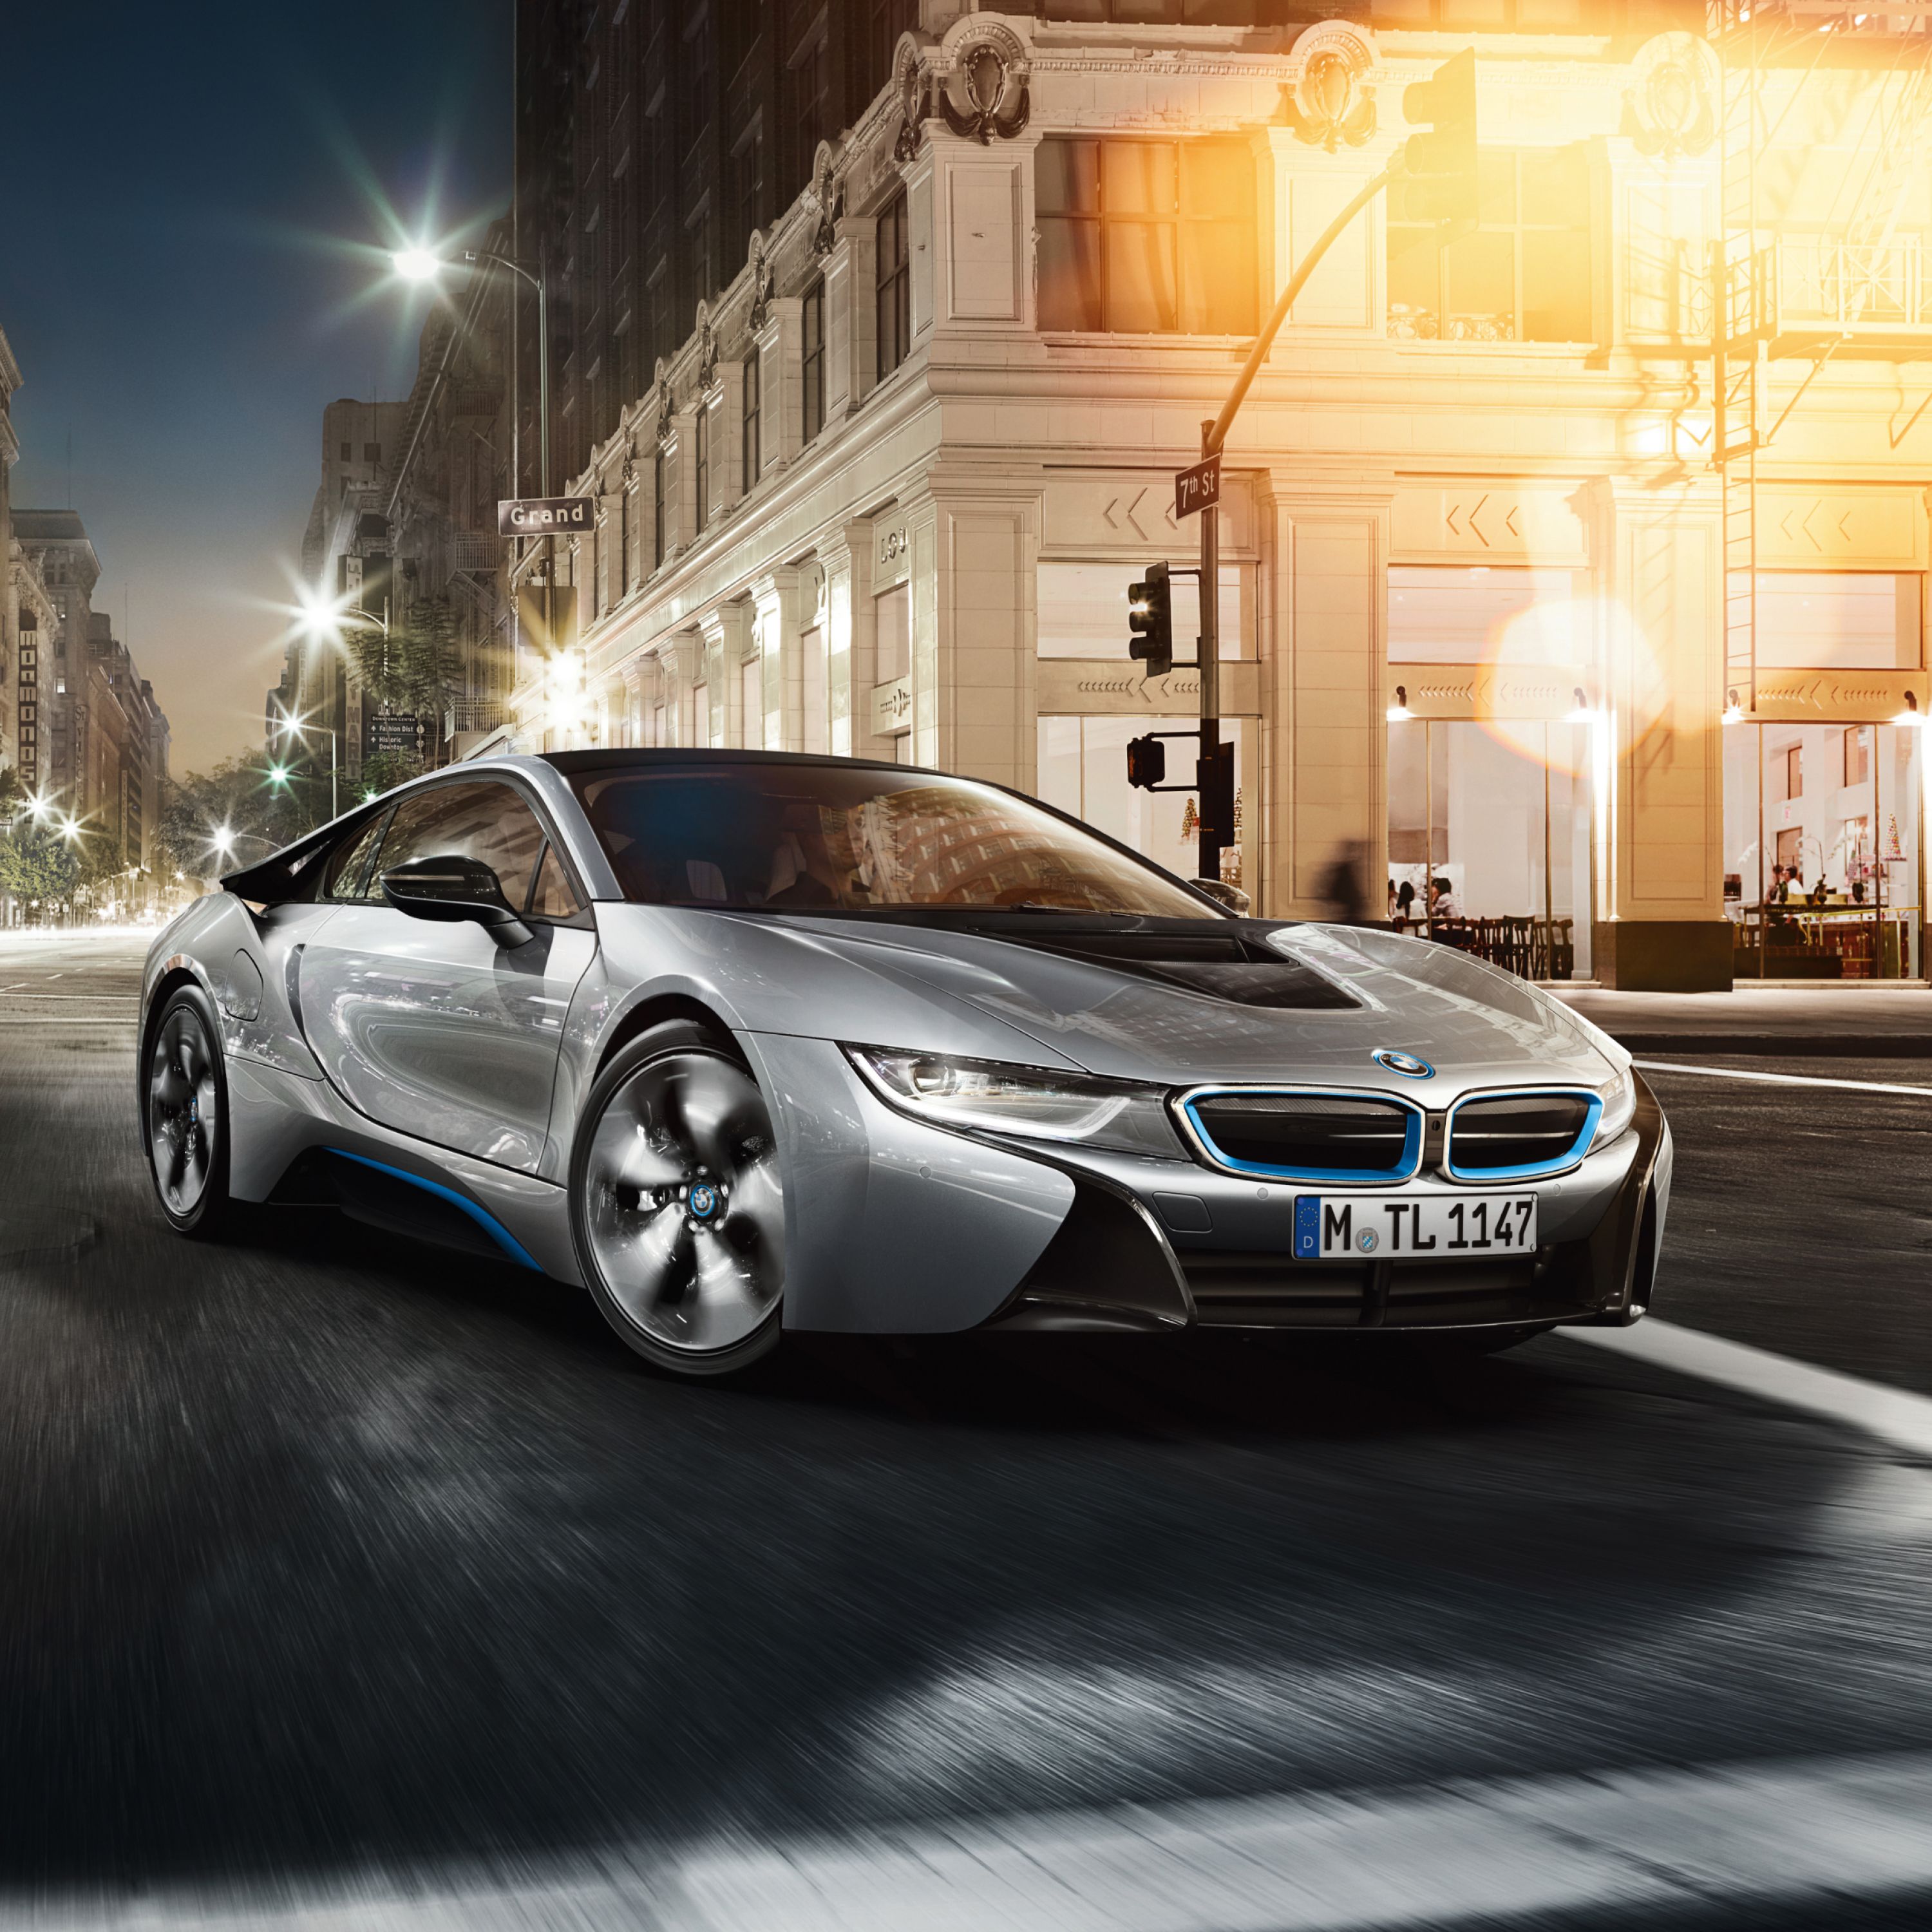 Silberner BMW i8 Plug-in-Hybrid Sportwagen parkend vor einem Grand Hotel in einer Großstadt